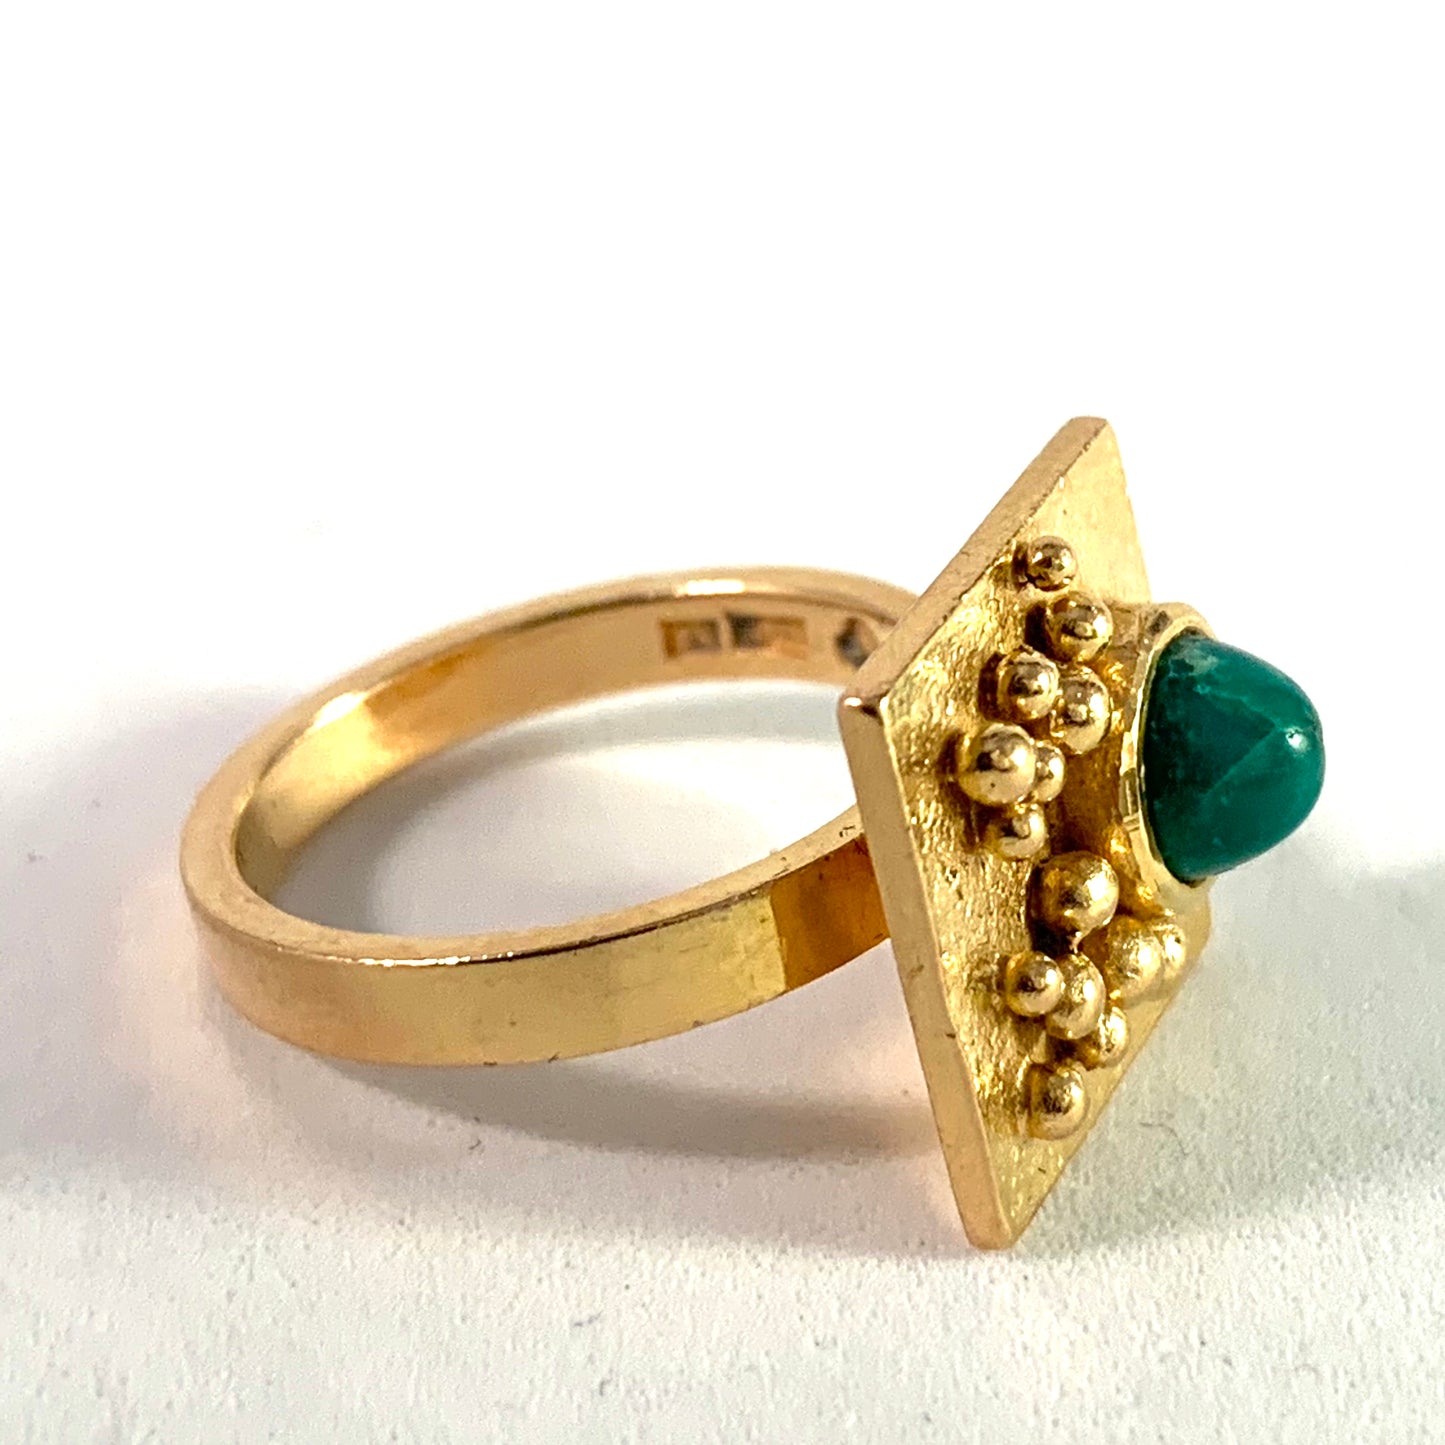 Ateljé Candra, Liedholm Sweden 1968. Modernist 18k Gold Turquoise Ring. Signed.